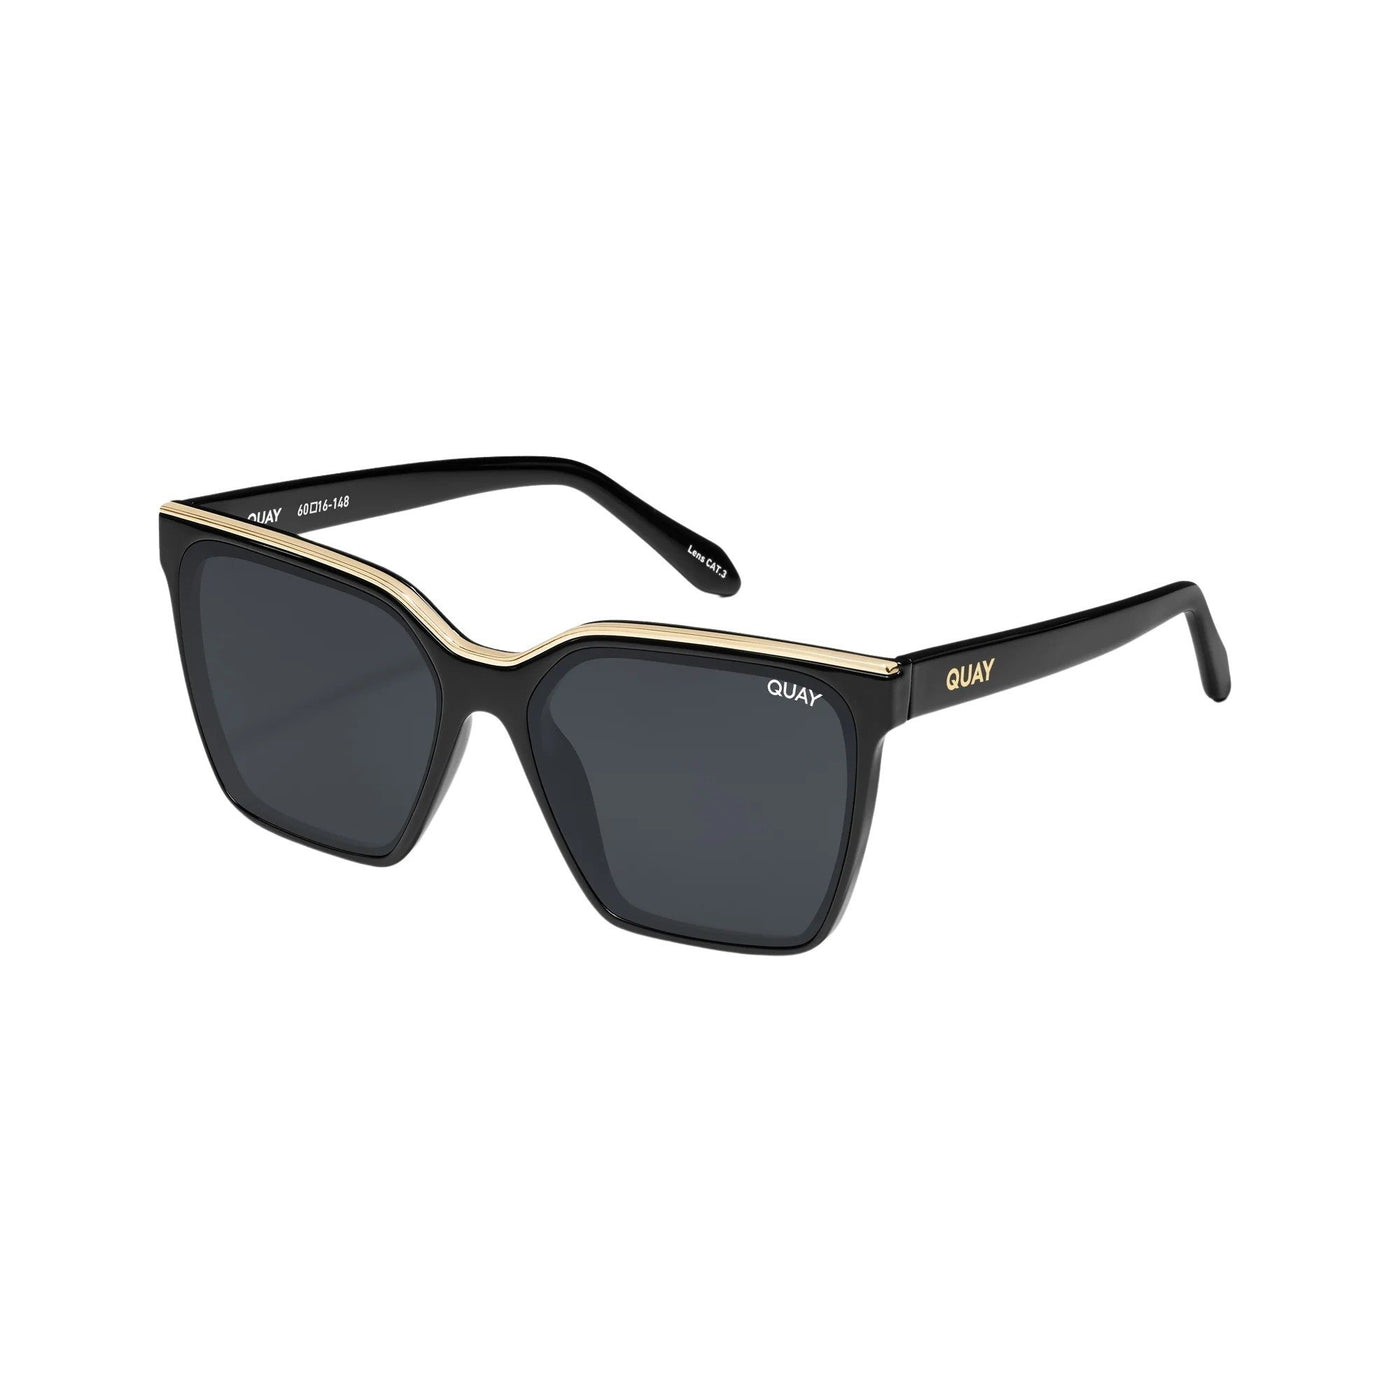 Quay Women's Level Up Square Sunglasses (Black Gold Frame/Smoke Lens) - 3/4 left angle